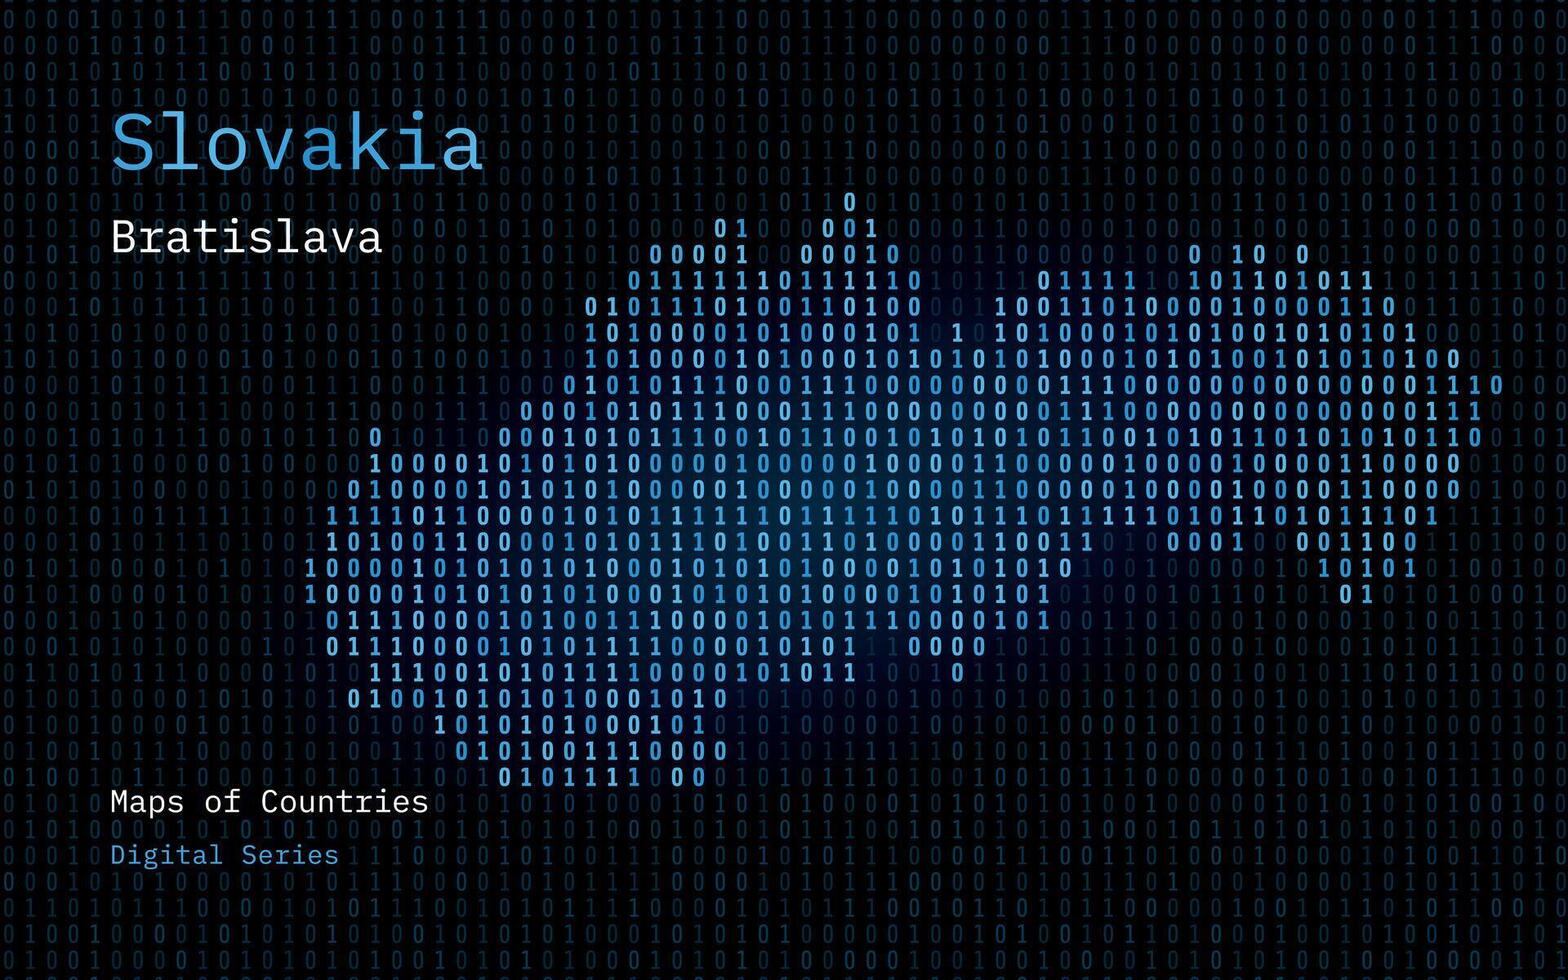 Slowakei Karte gezeigt im binär Code Muster. Matrix Zahlen, null, eins. Welt Länder Vektor Karten. Digital Serie